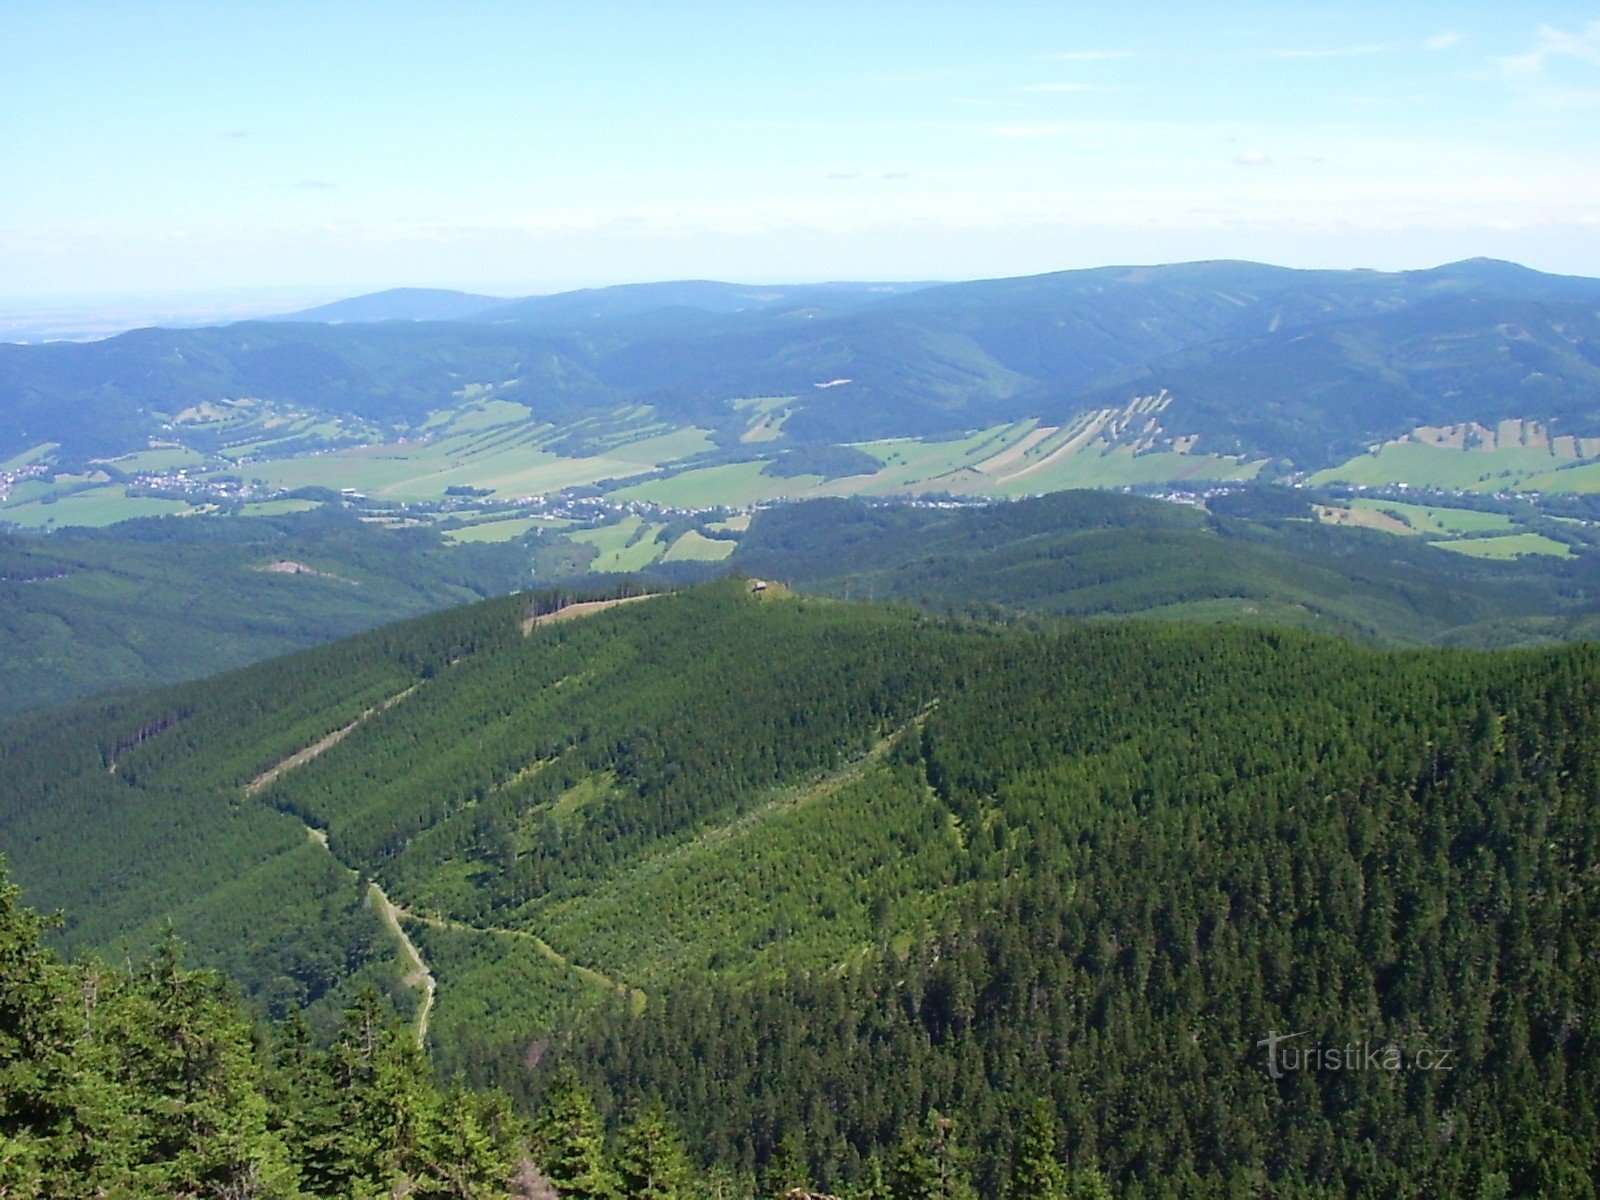 Šerák 的景色